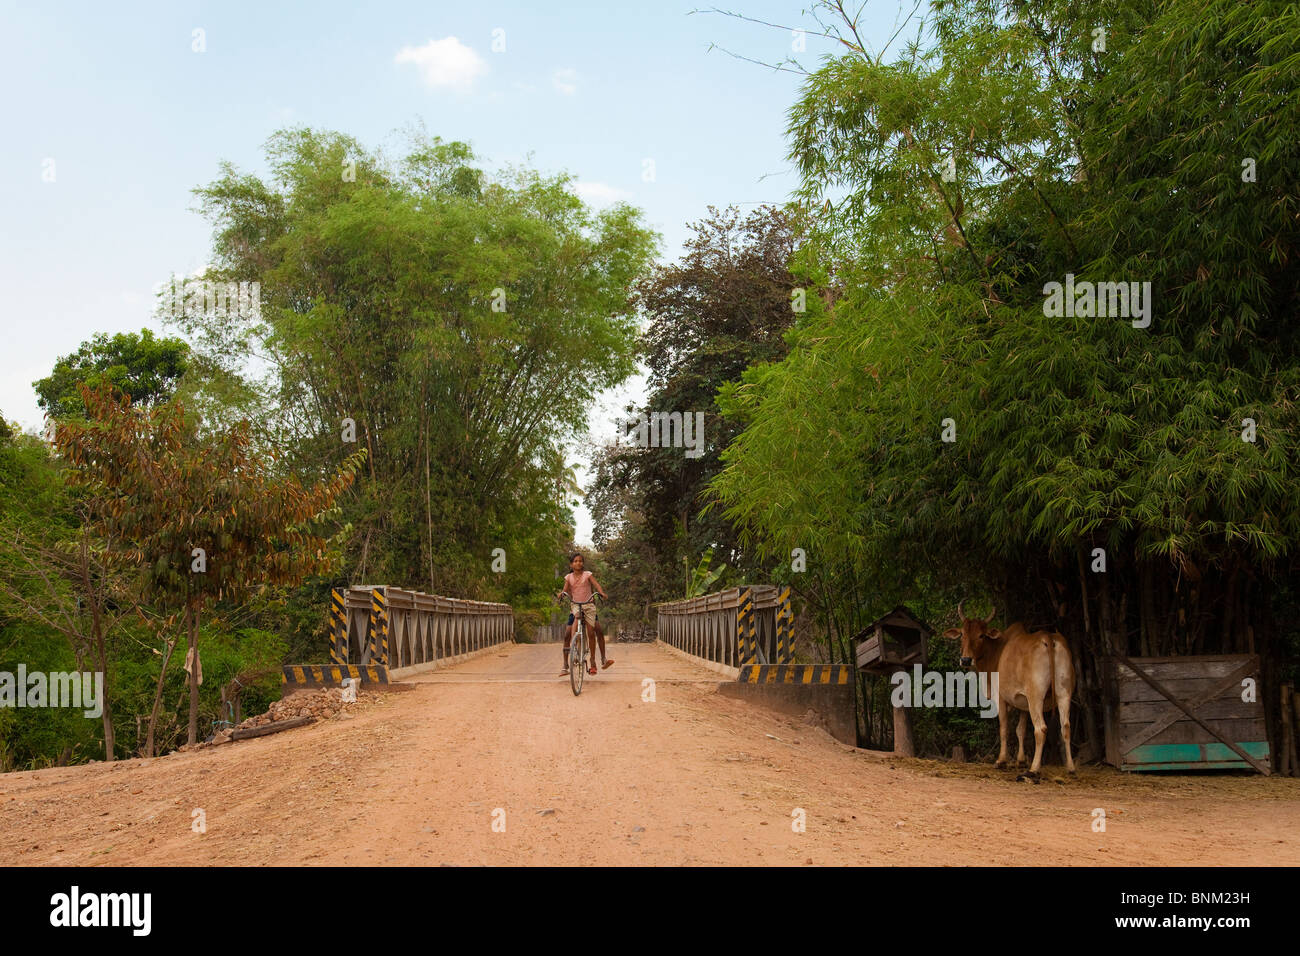 Kambodschanische Mädchen Fahrrad fahren über eine Brücke auf dem Lande - Provinz Siem Reap, Kambodscha Stockfoto